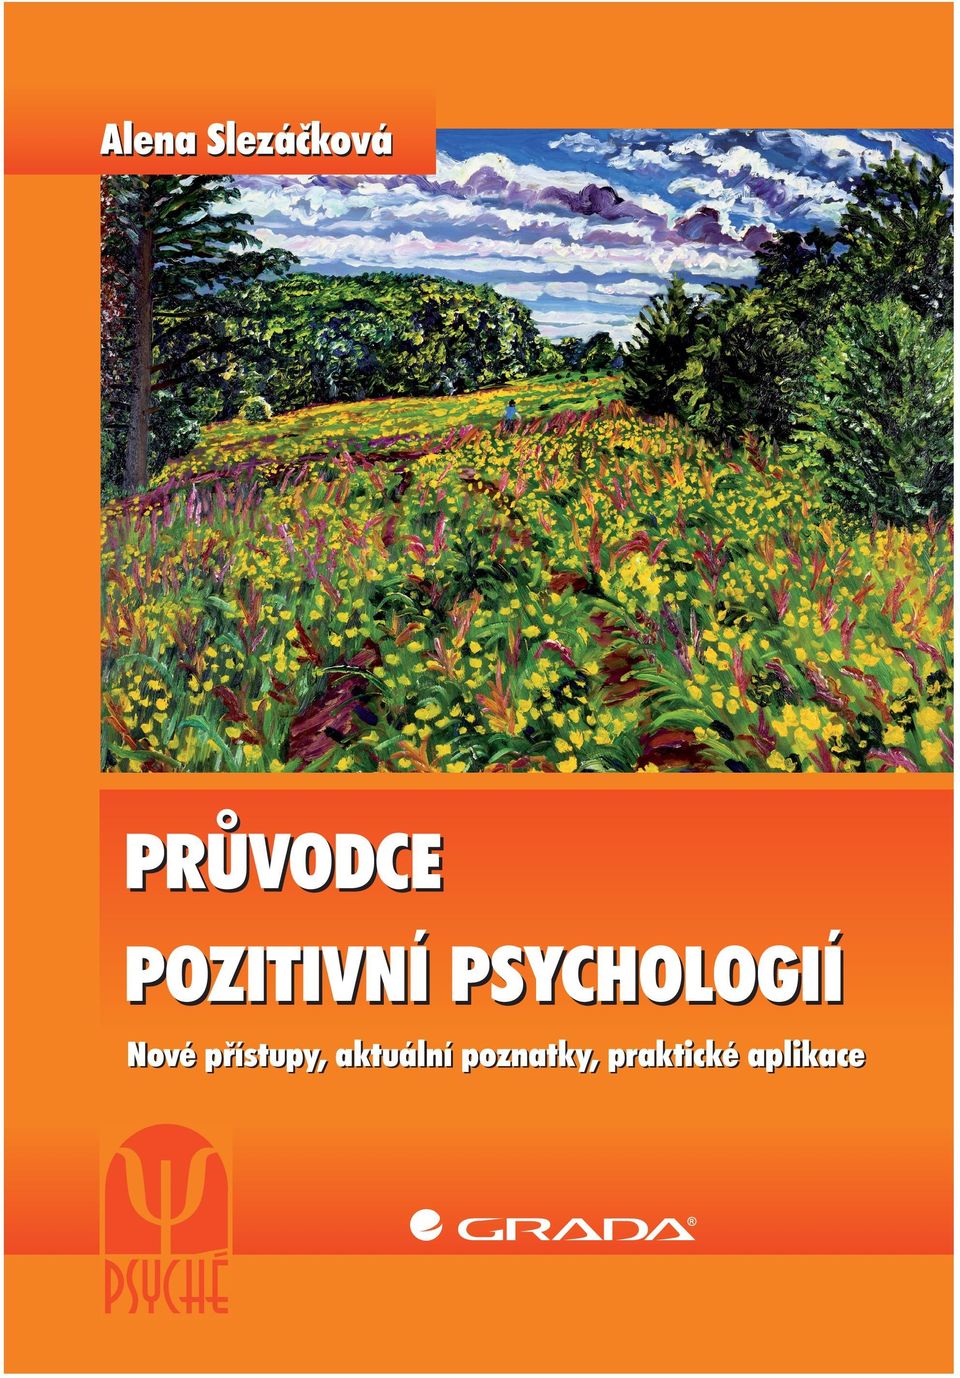 cz), zástupkyní ČR v Evropské společnosti pozitivní psychologie ENPP a členkou vedení Mezinárodní asociace pozitivní psychologie IPPA.